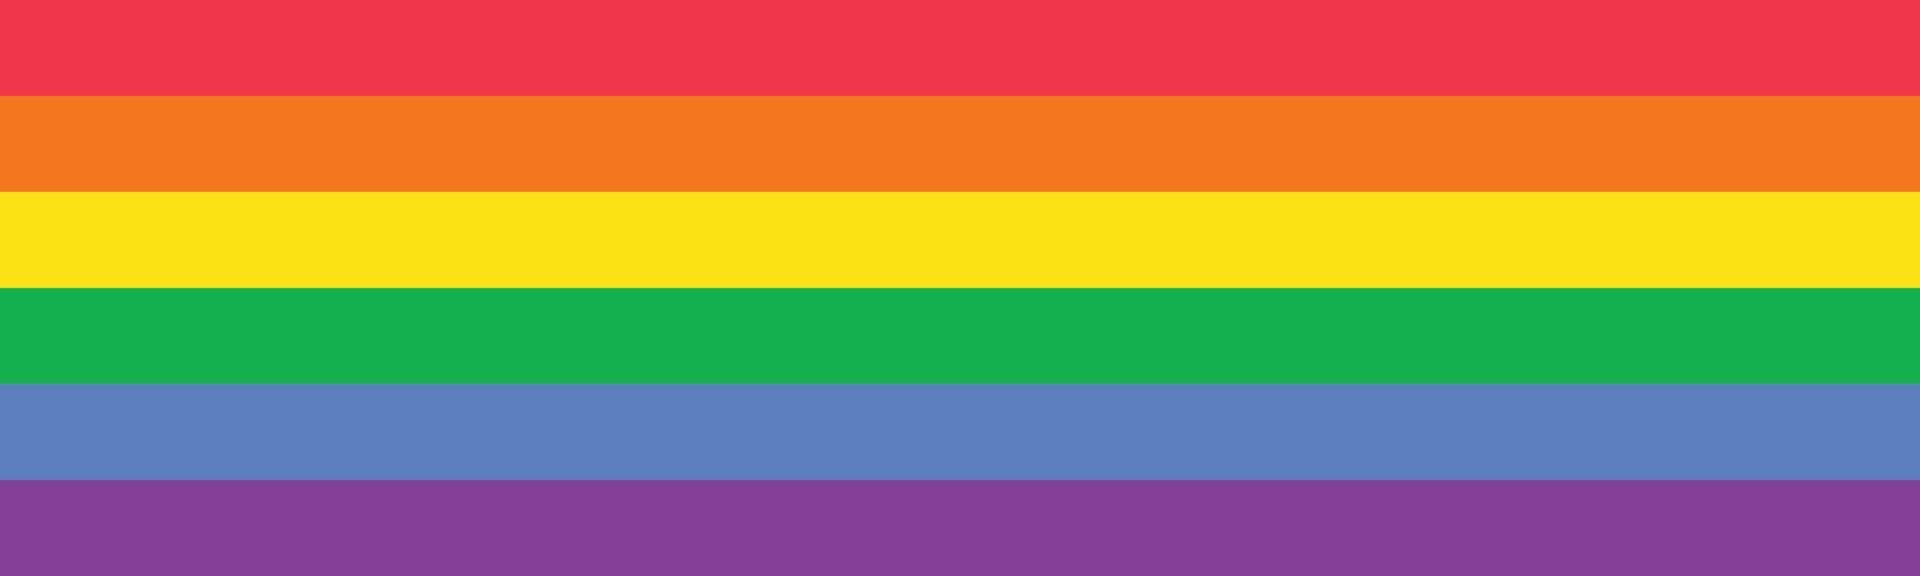 horizontale lange banner gekleurd in regenboog lgbtq gay pride-vlagkleuren. lgbtq gay pride-logo vectorillustratie. achtergrondontwerp voor trotsmaand. vector